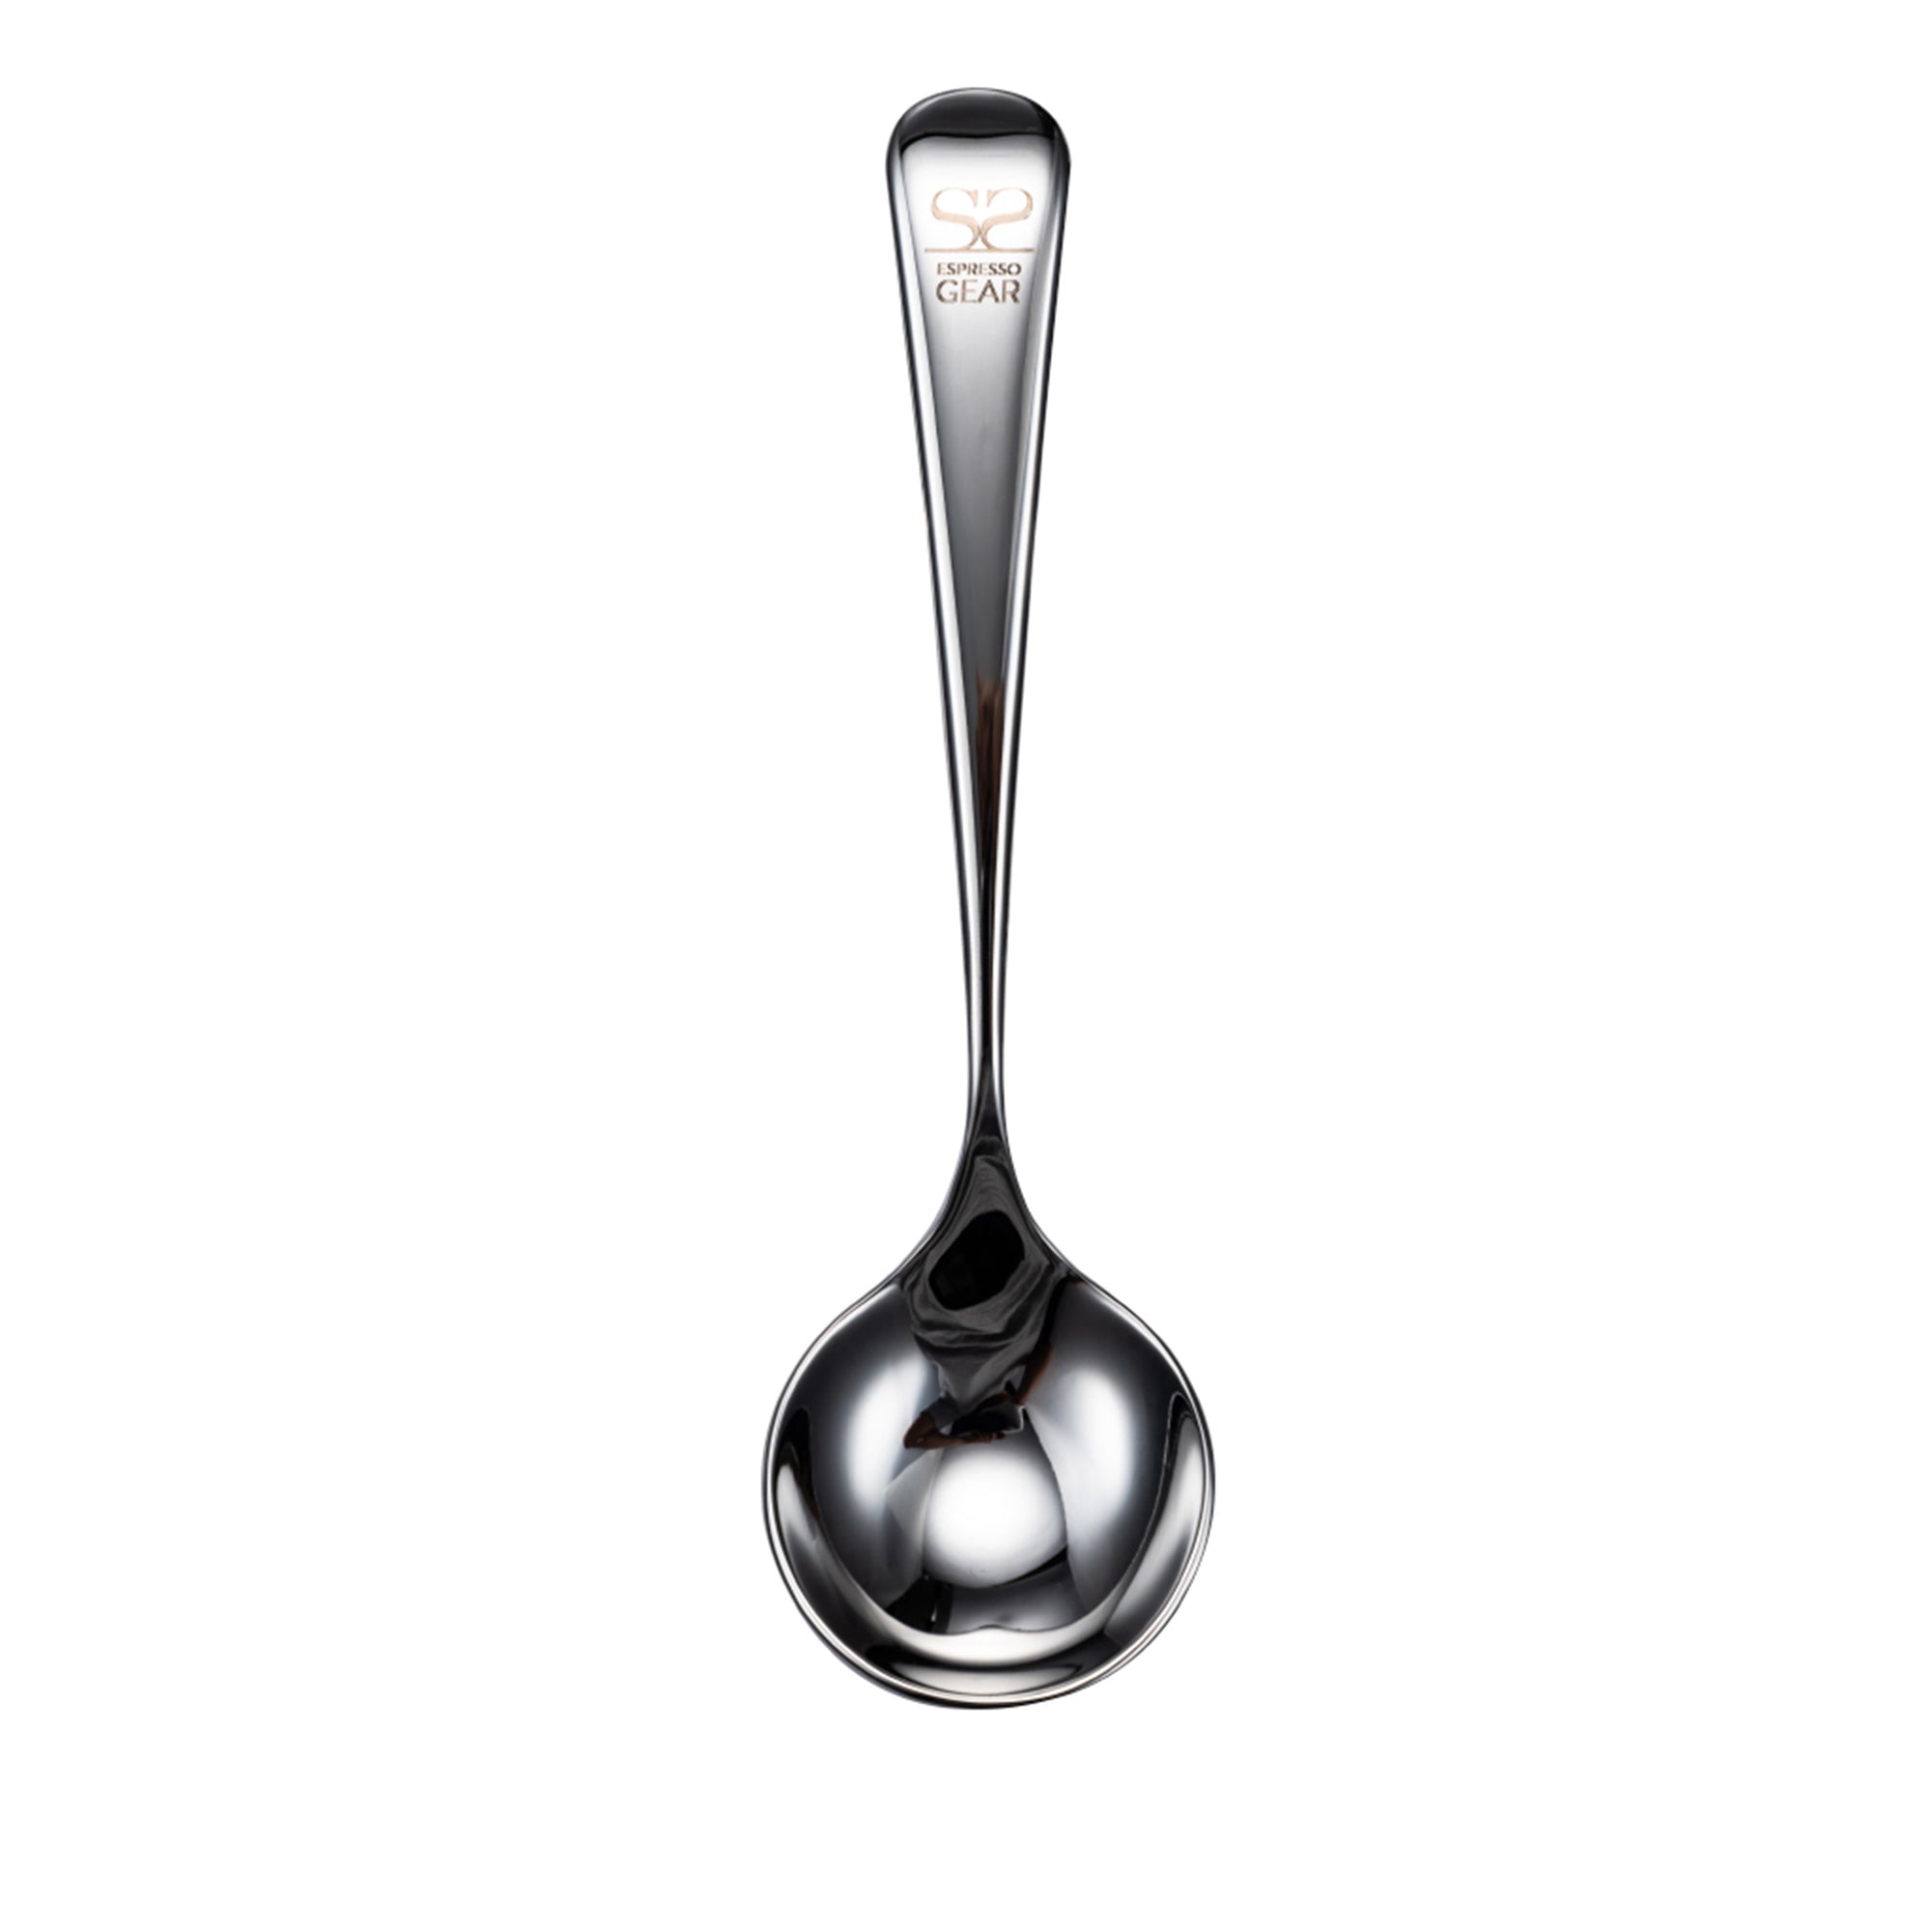 Cupping Spoon - Espresso Gear - Espresso Gear